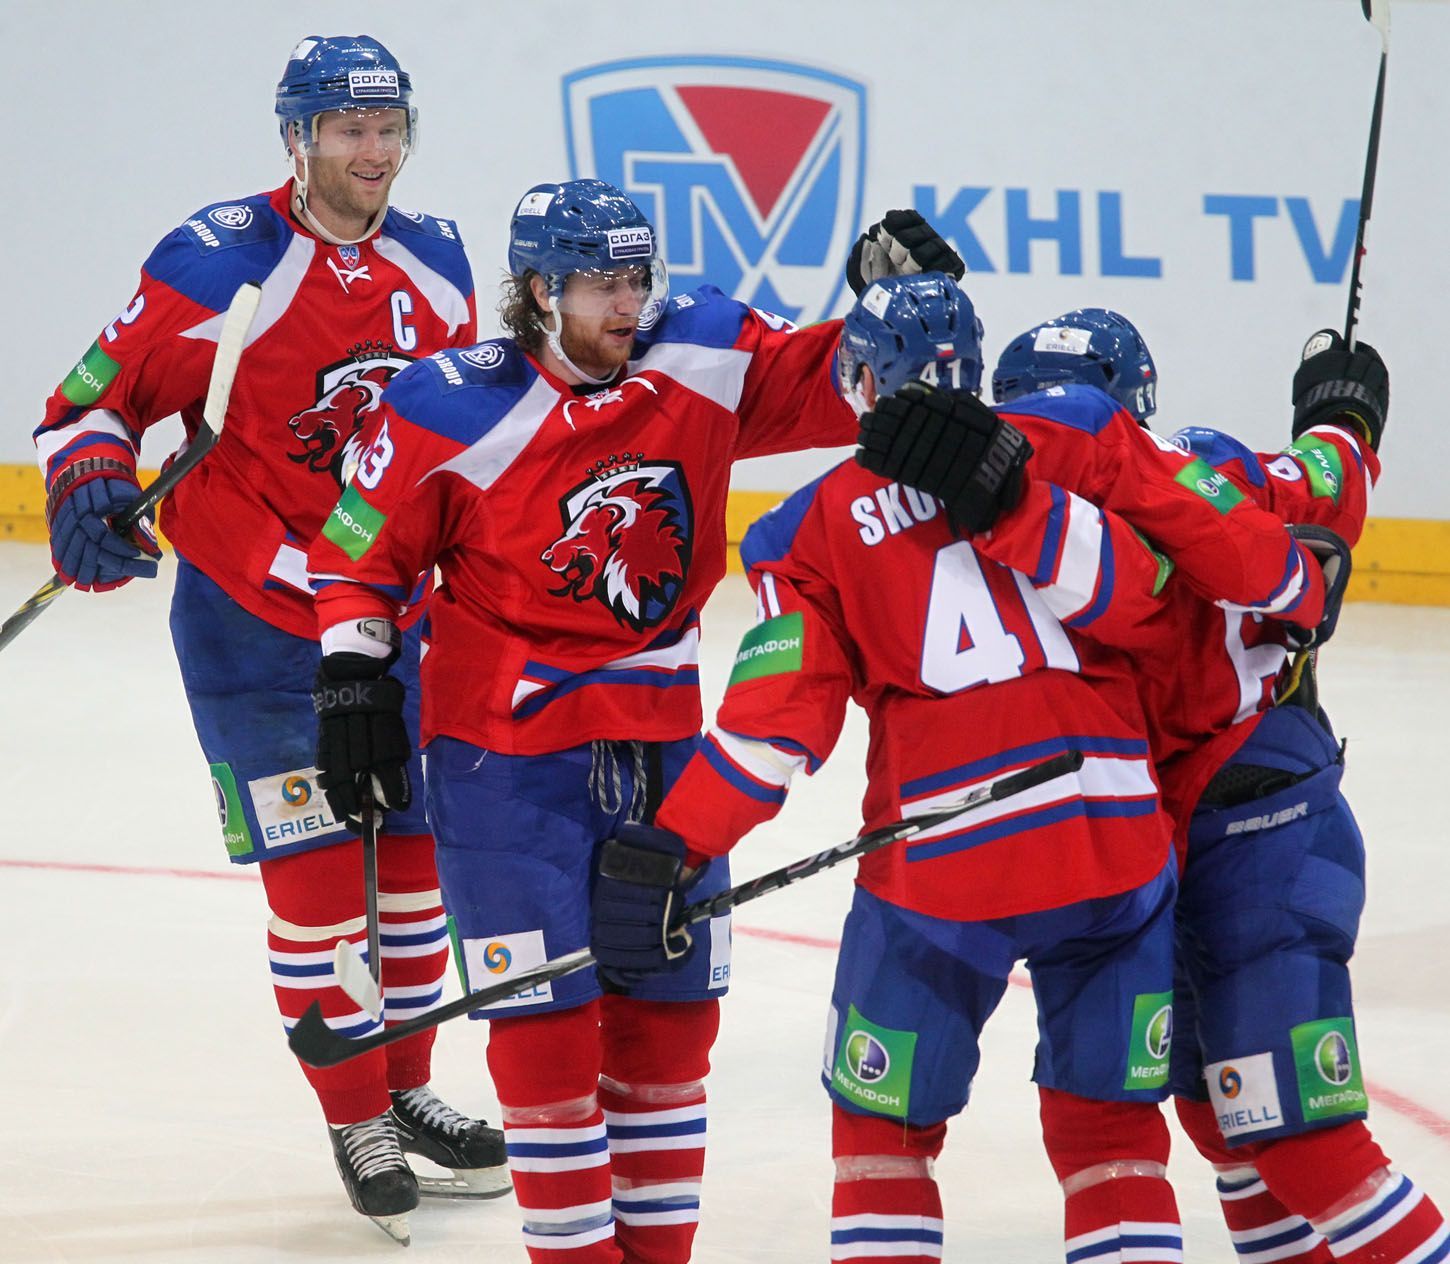 Hokejisté Lva Praha (zleva) Jiří Novotný, Jakub Voráček, Martin Škoula a Ondřej Němec slaví gól v utkání KHL proti SKA Petrohradu.